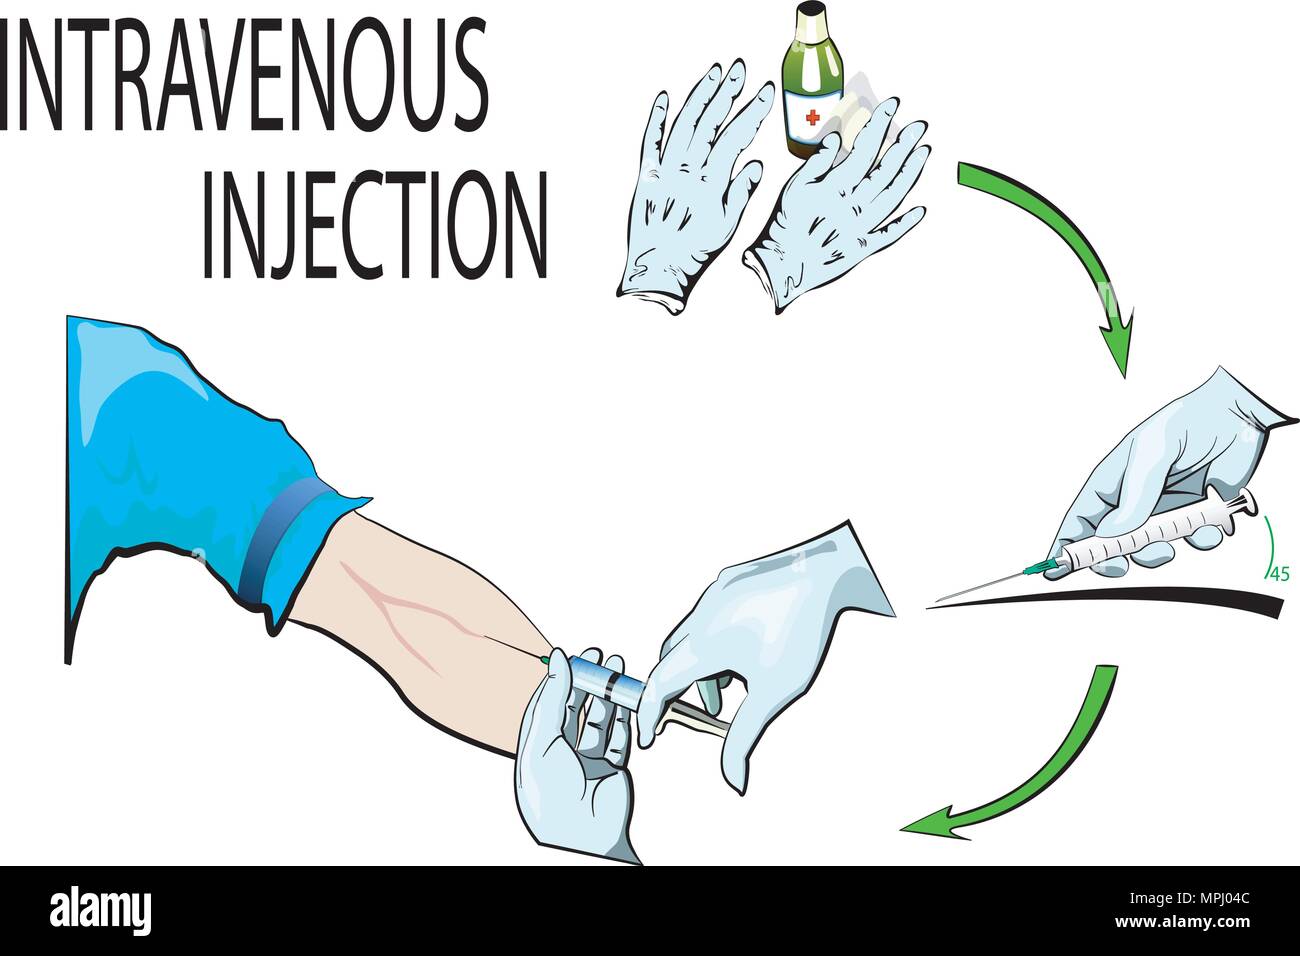 Illustration de gants médicaux, d'alcool et d'une seringue. Description L'injection intraveineuse. Illustration de Vecteur